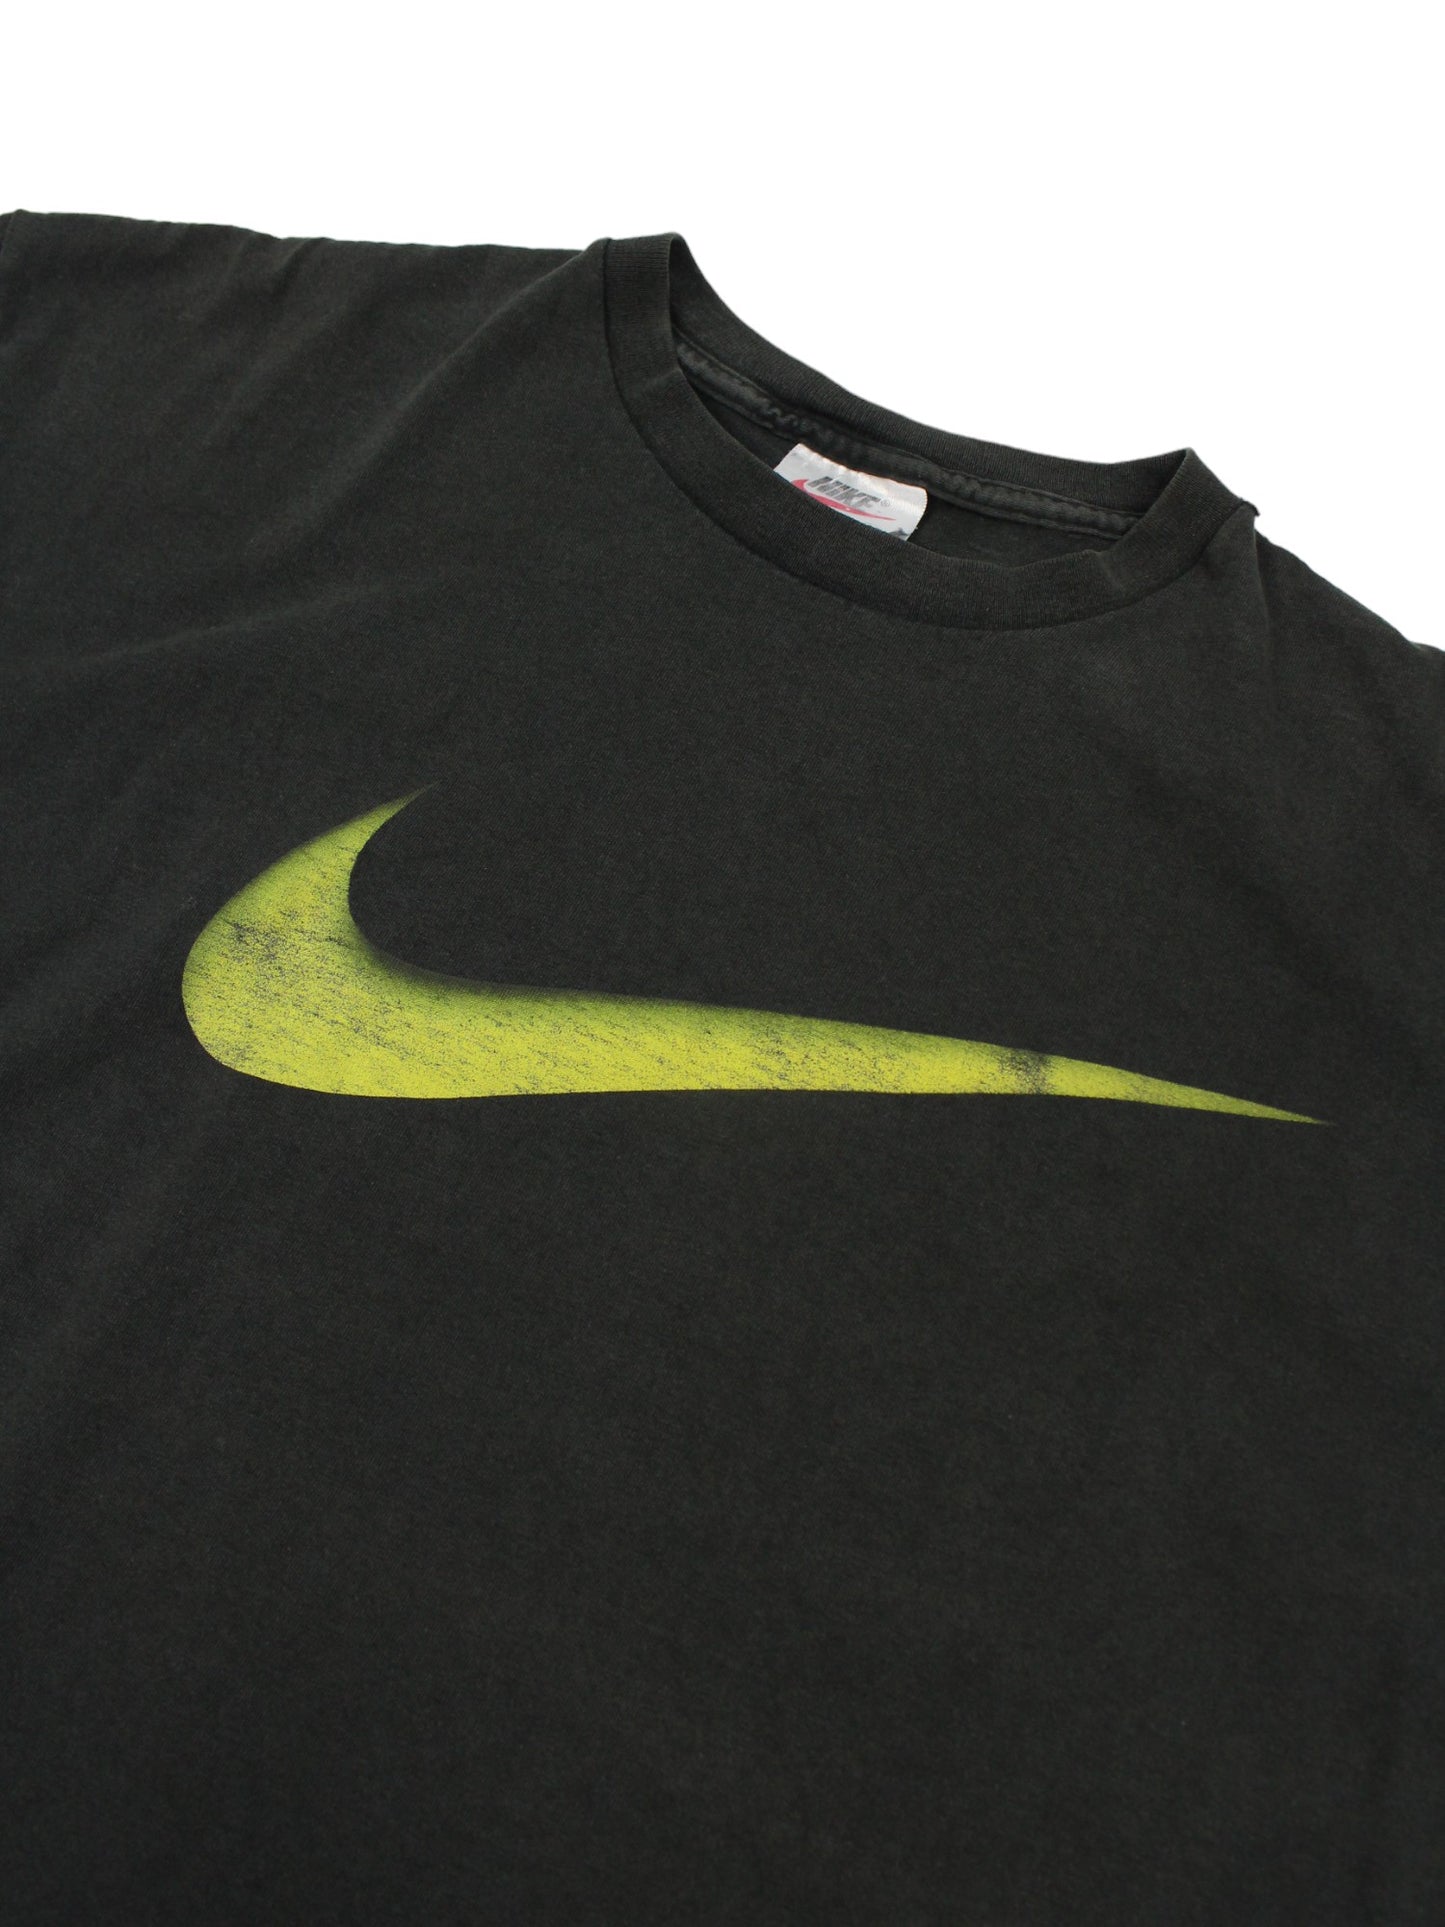 90s Nike Black T-Shirt (S)